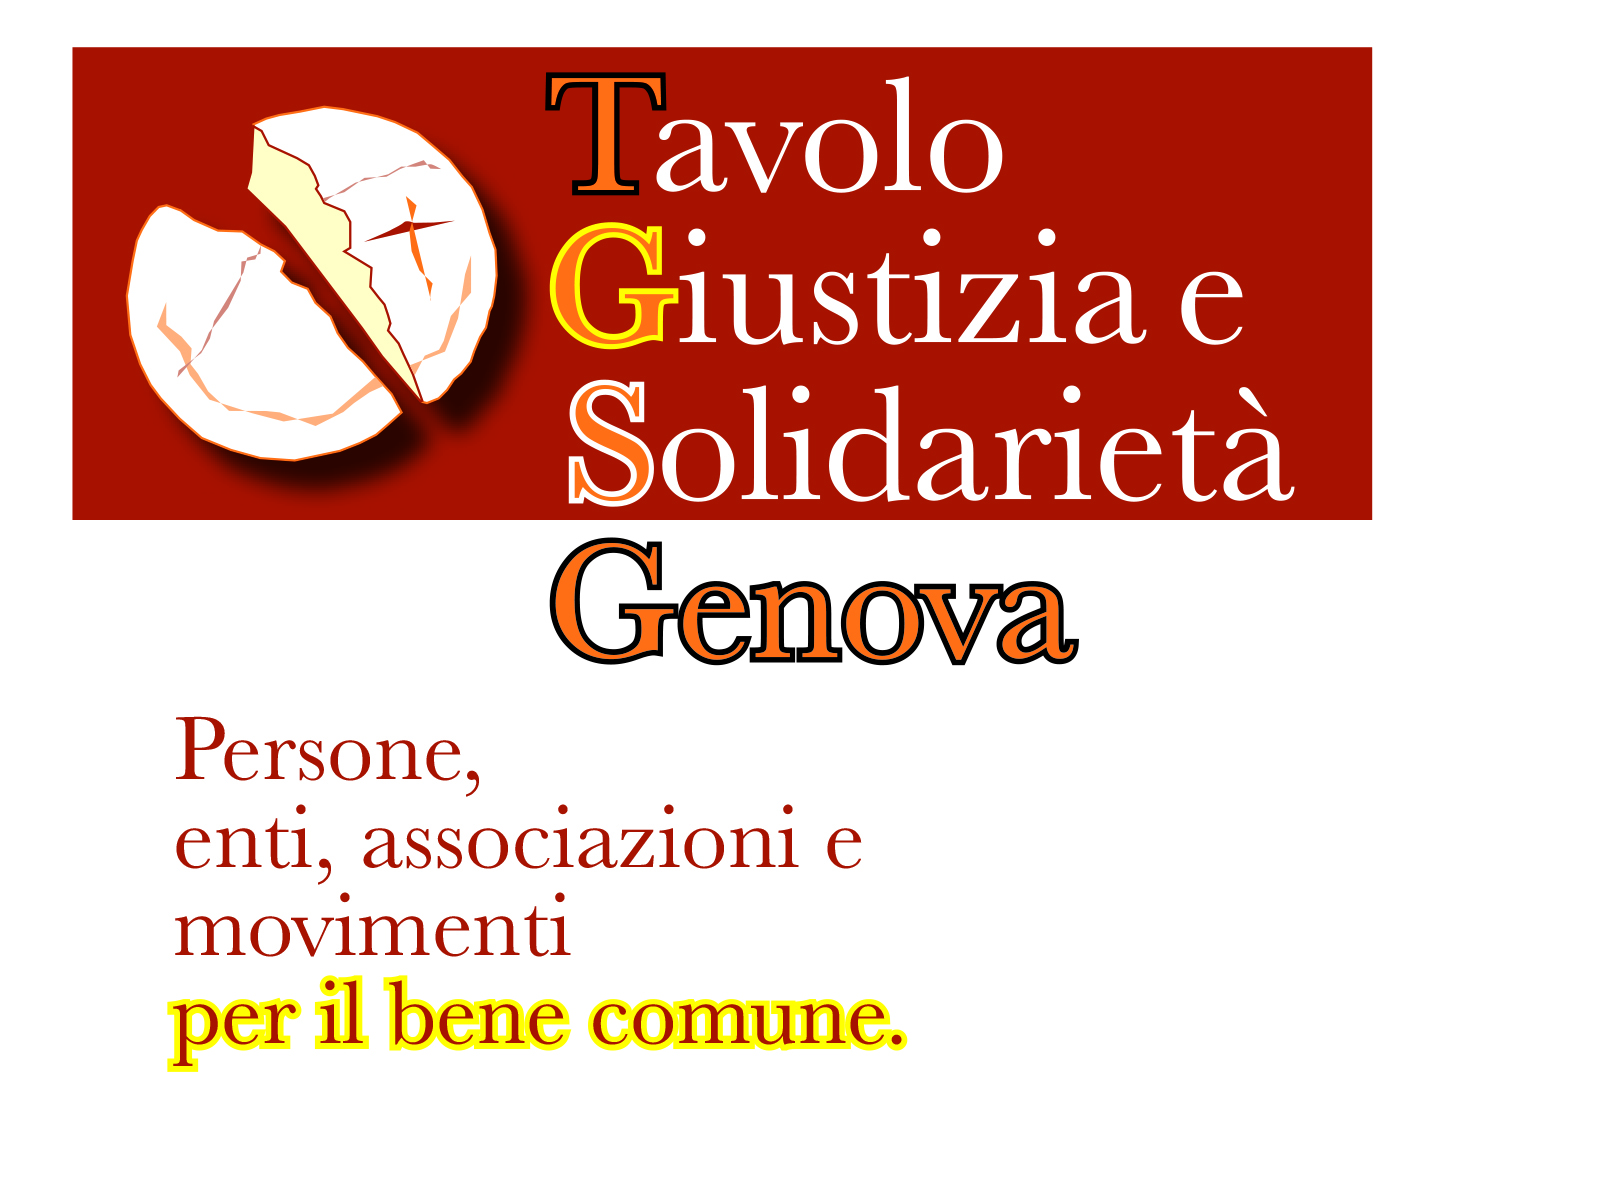 Tavolo Giustizia e Solidarietà - Genova